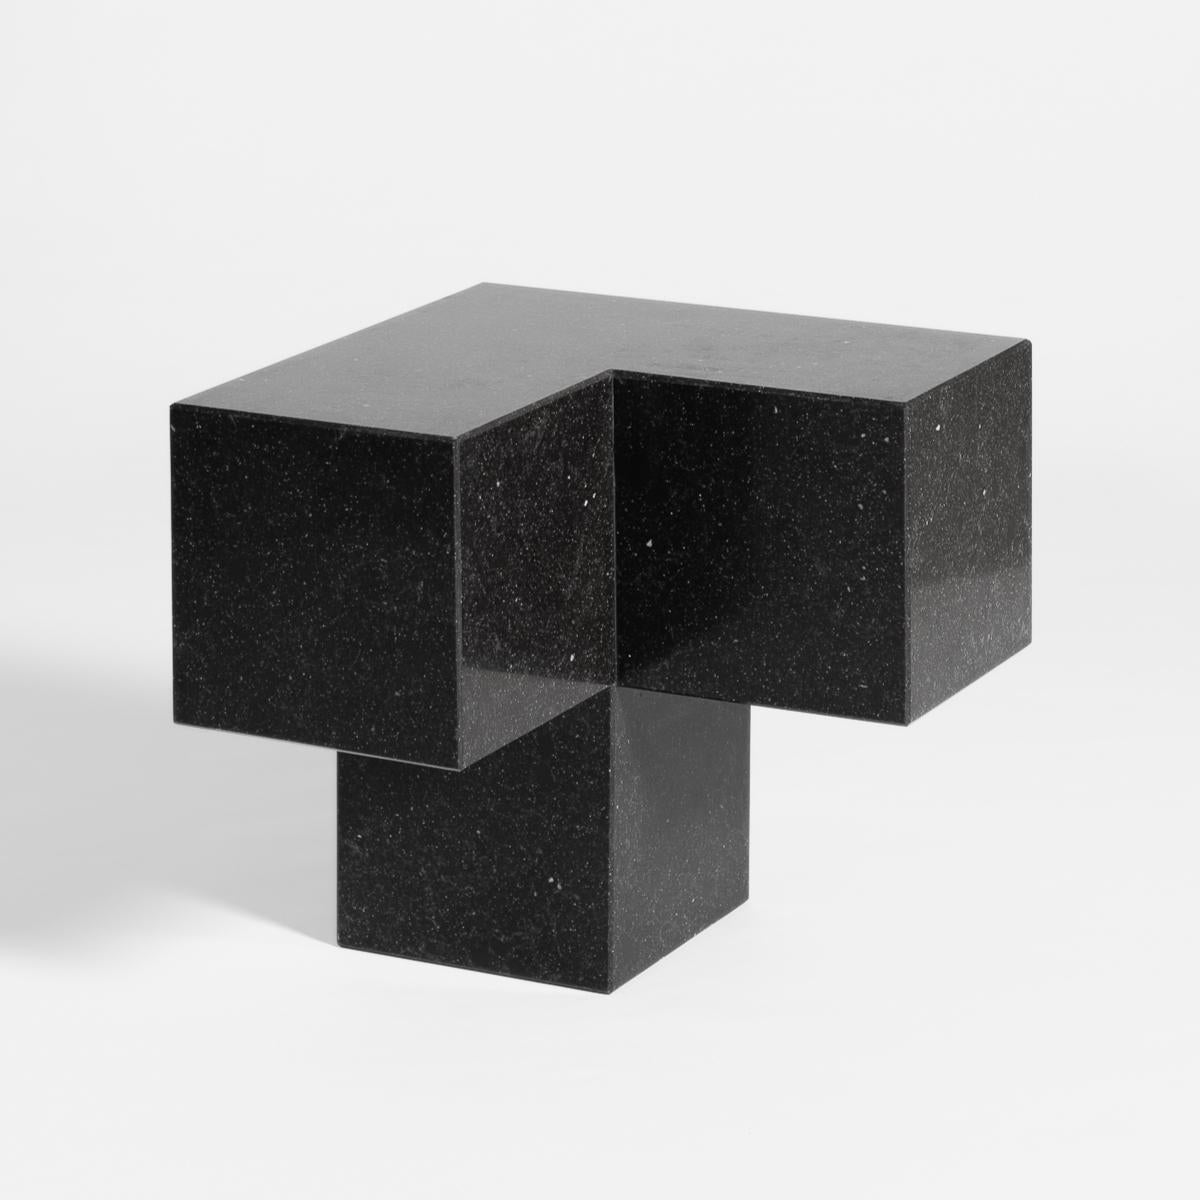 Voxel M - Table basse et table d'appoint en pierre de quartz moderne du 21e siècle

En infographie, un voxel représente une valeur dans une grille régulière d'un espace tridimensionnel. Du particulier au tout, nous partons d'une unité qui se